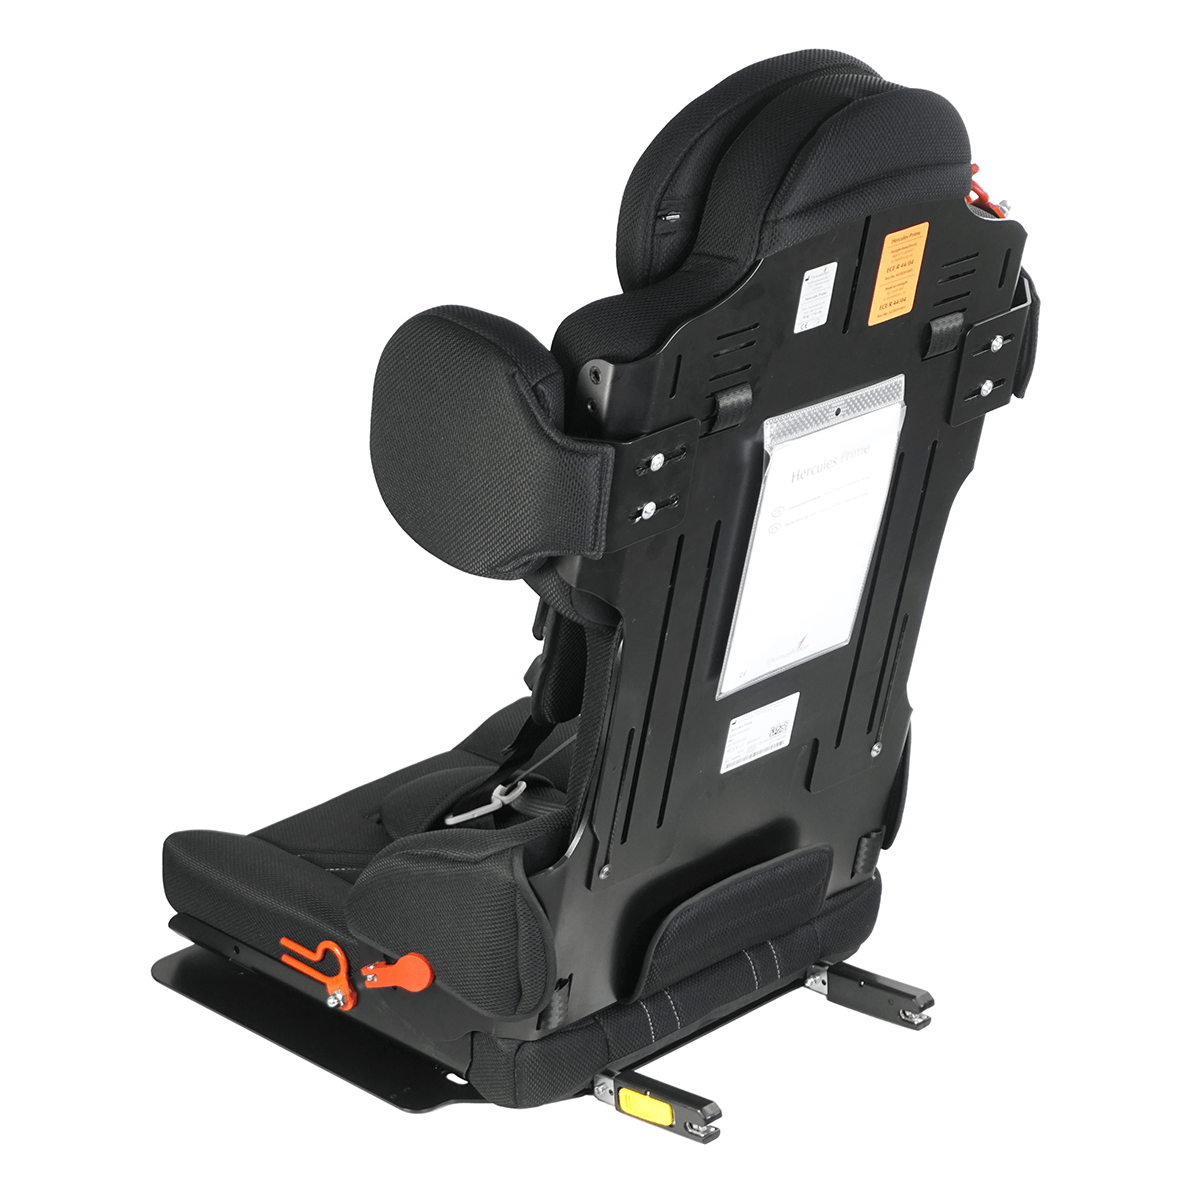 Montierter Seatfix-Adapter am Hercules Prime